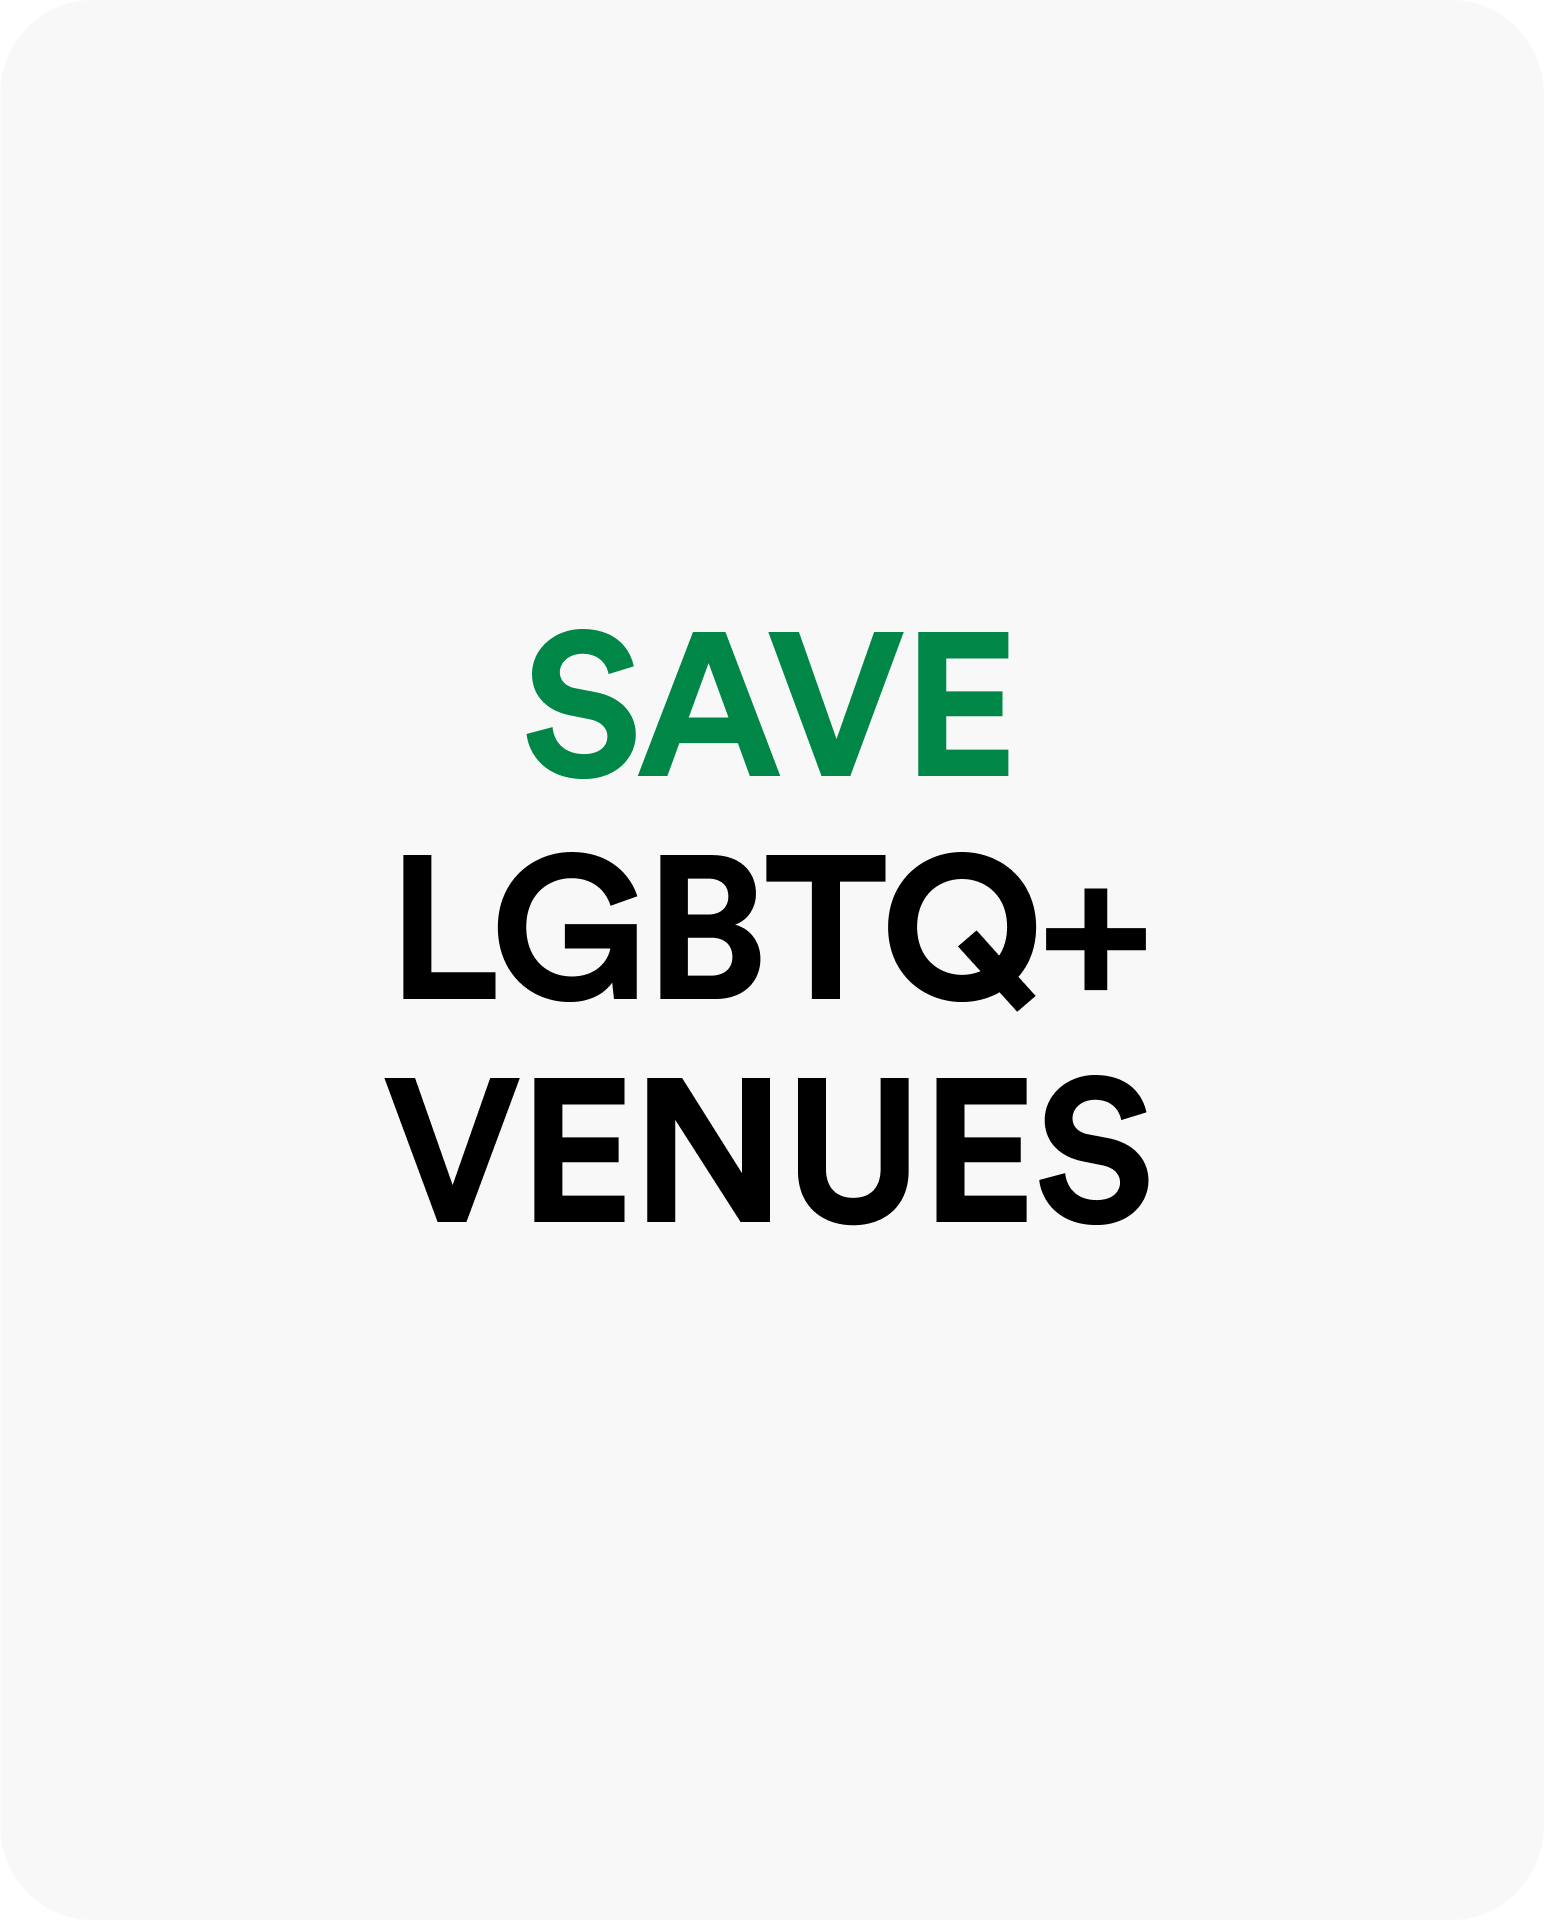 Save LGBTQ+ venues